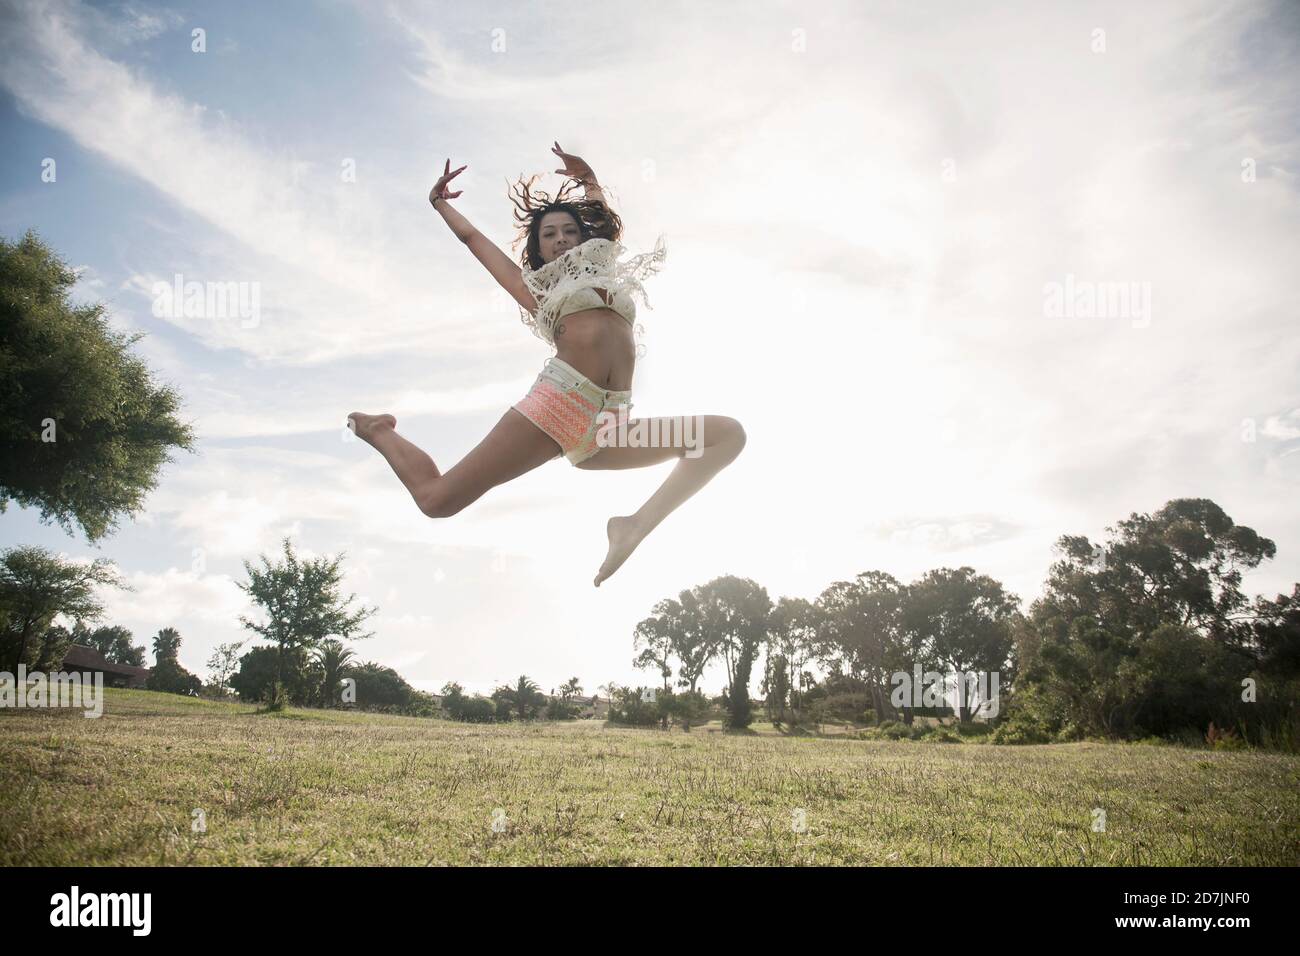 Une jeune femme sautant dans un parc public contre un ciel dégagé Banque D'Images